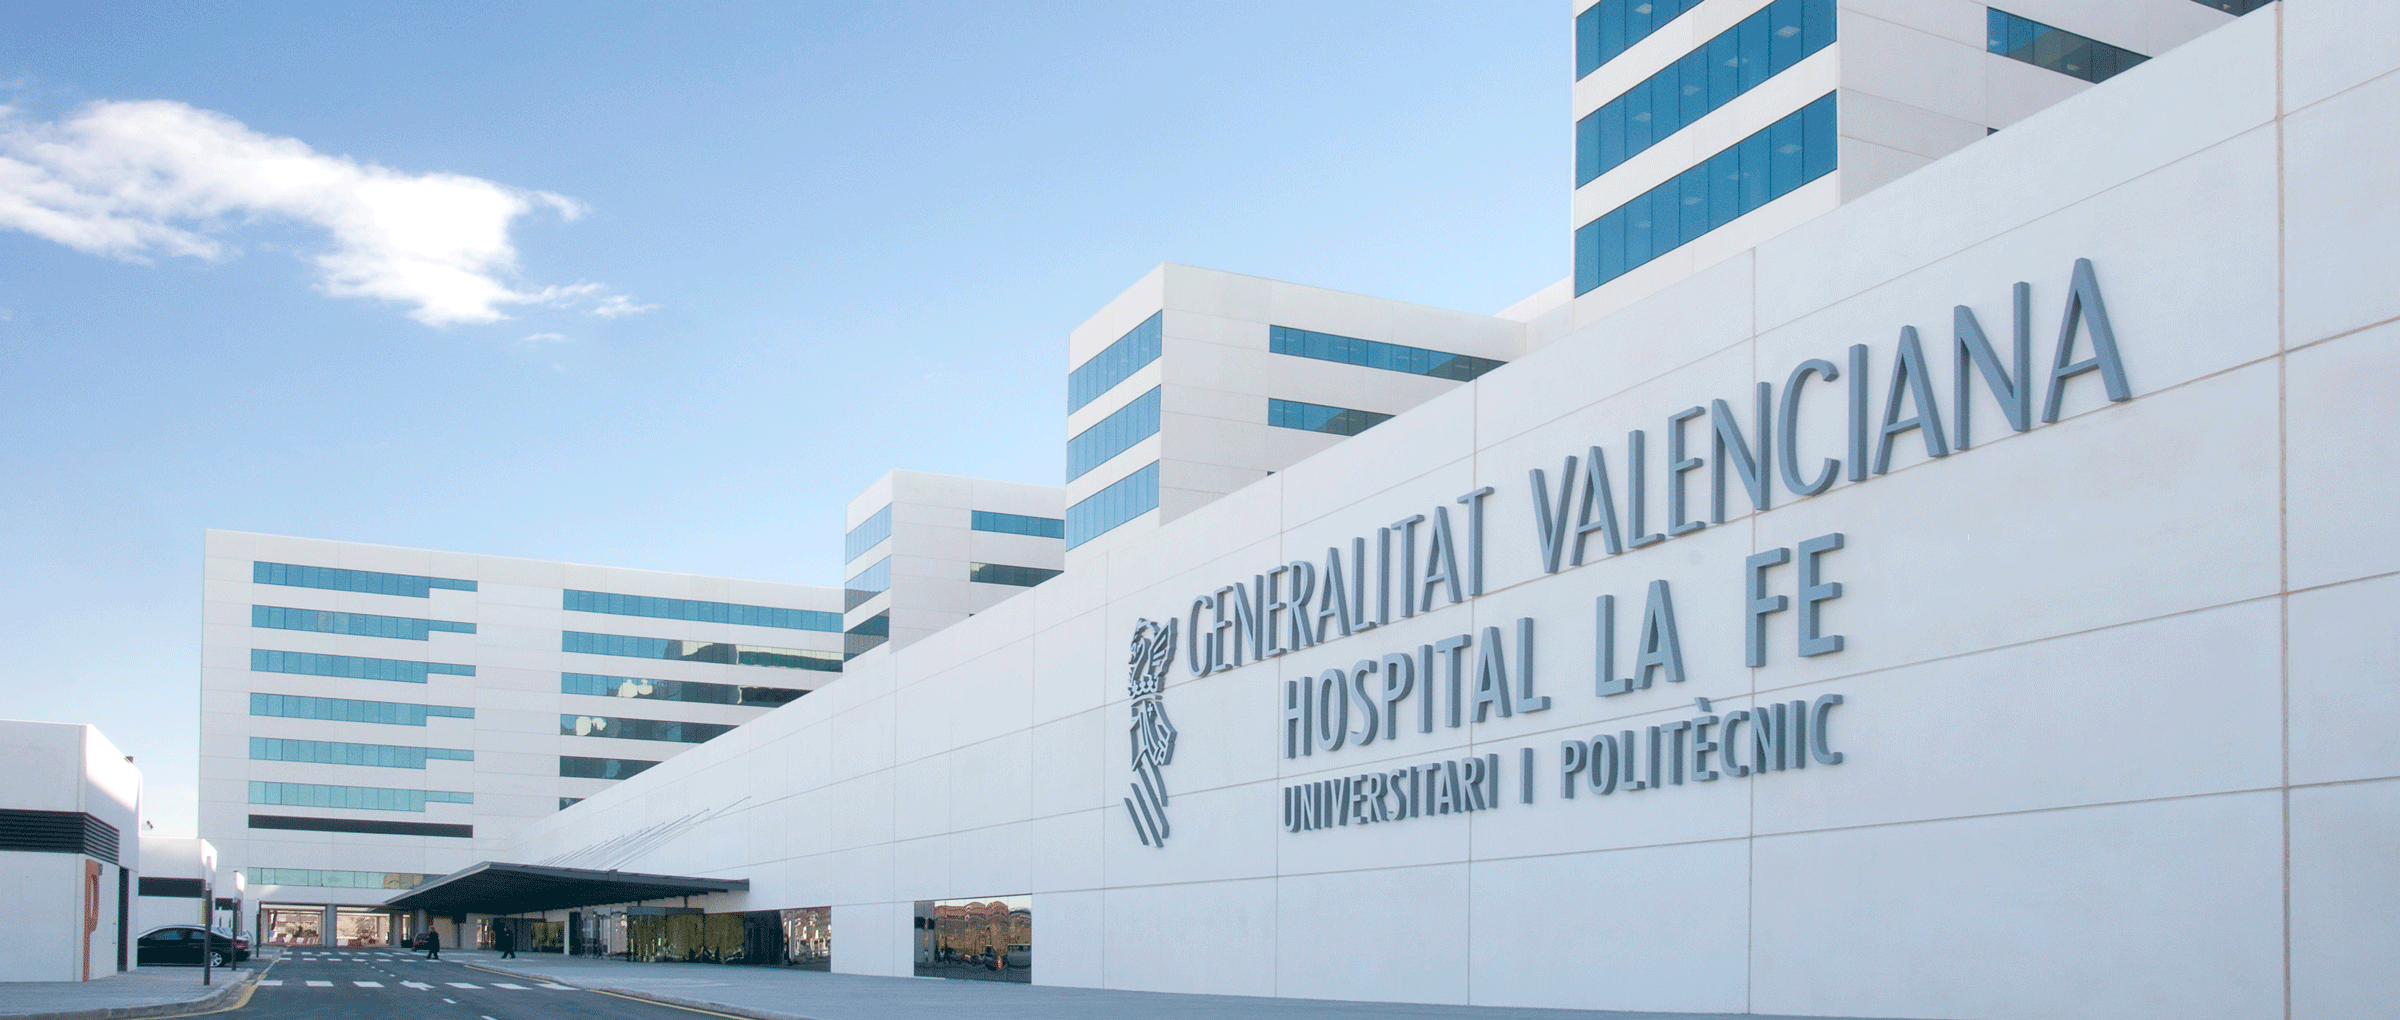 hospital-la-fe-valencia